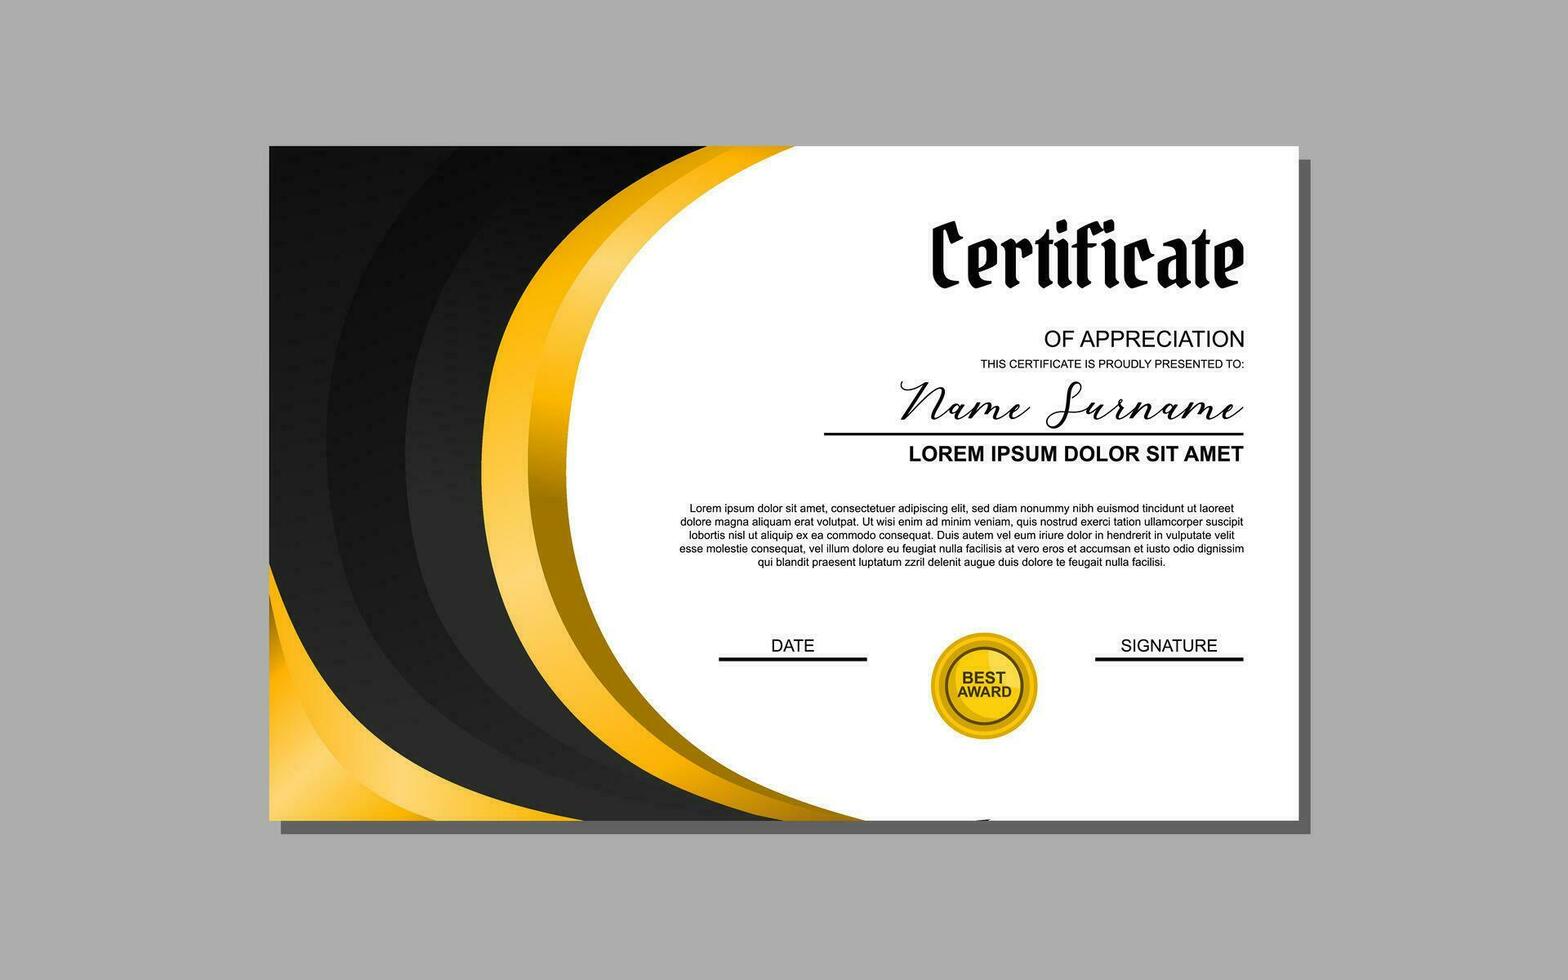 en certifikat mall terar ett elegant guld och svart design. lämplig för skapande professionell certifikat för utmärkelser, prestationer, och igenkännande i olika industrier. vektor